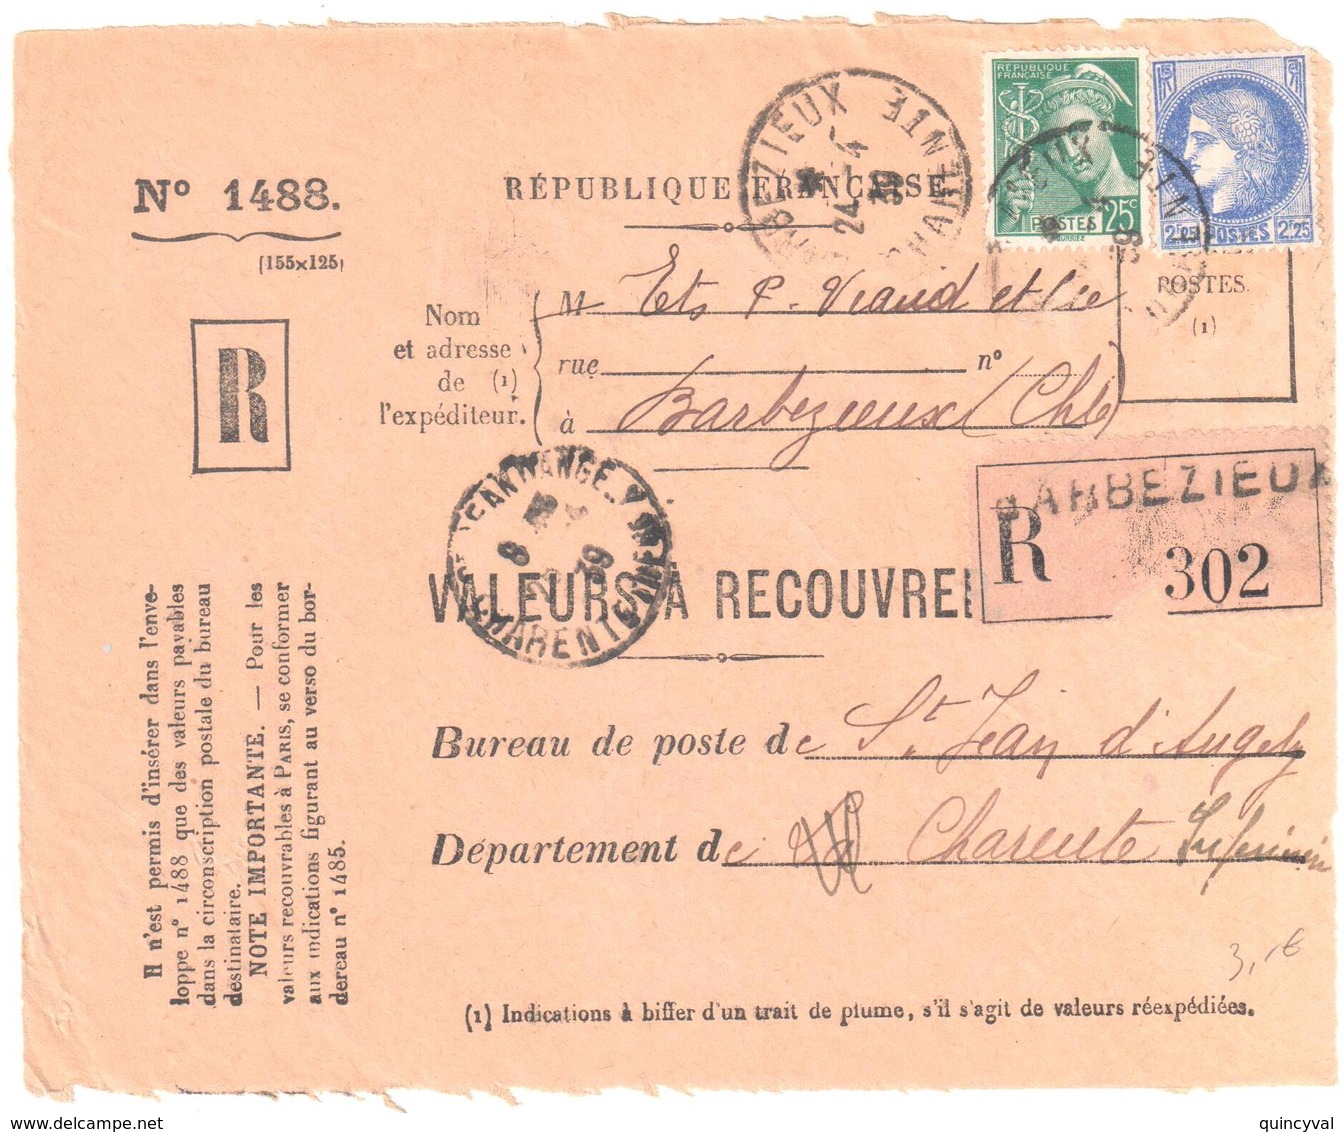 BARBEZIEUX Charente Inf Valeur à Recouvrer Reco 1488 2,25 F Cérés 25c Mercure 25c Yv 375 411 Ob 1939 - Lettres & Documents